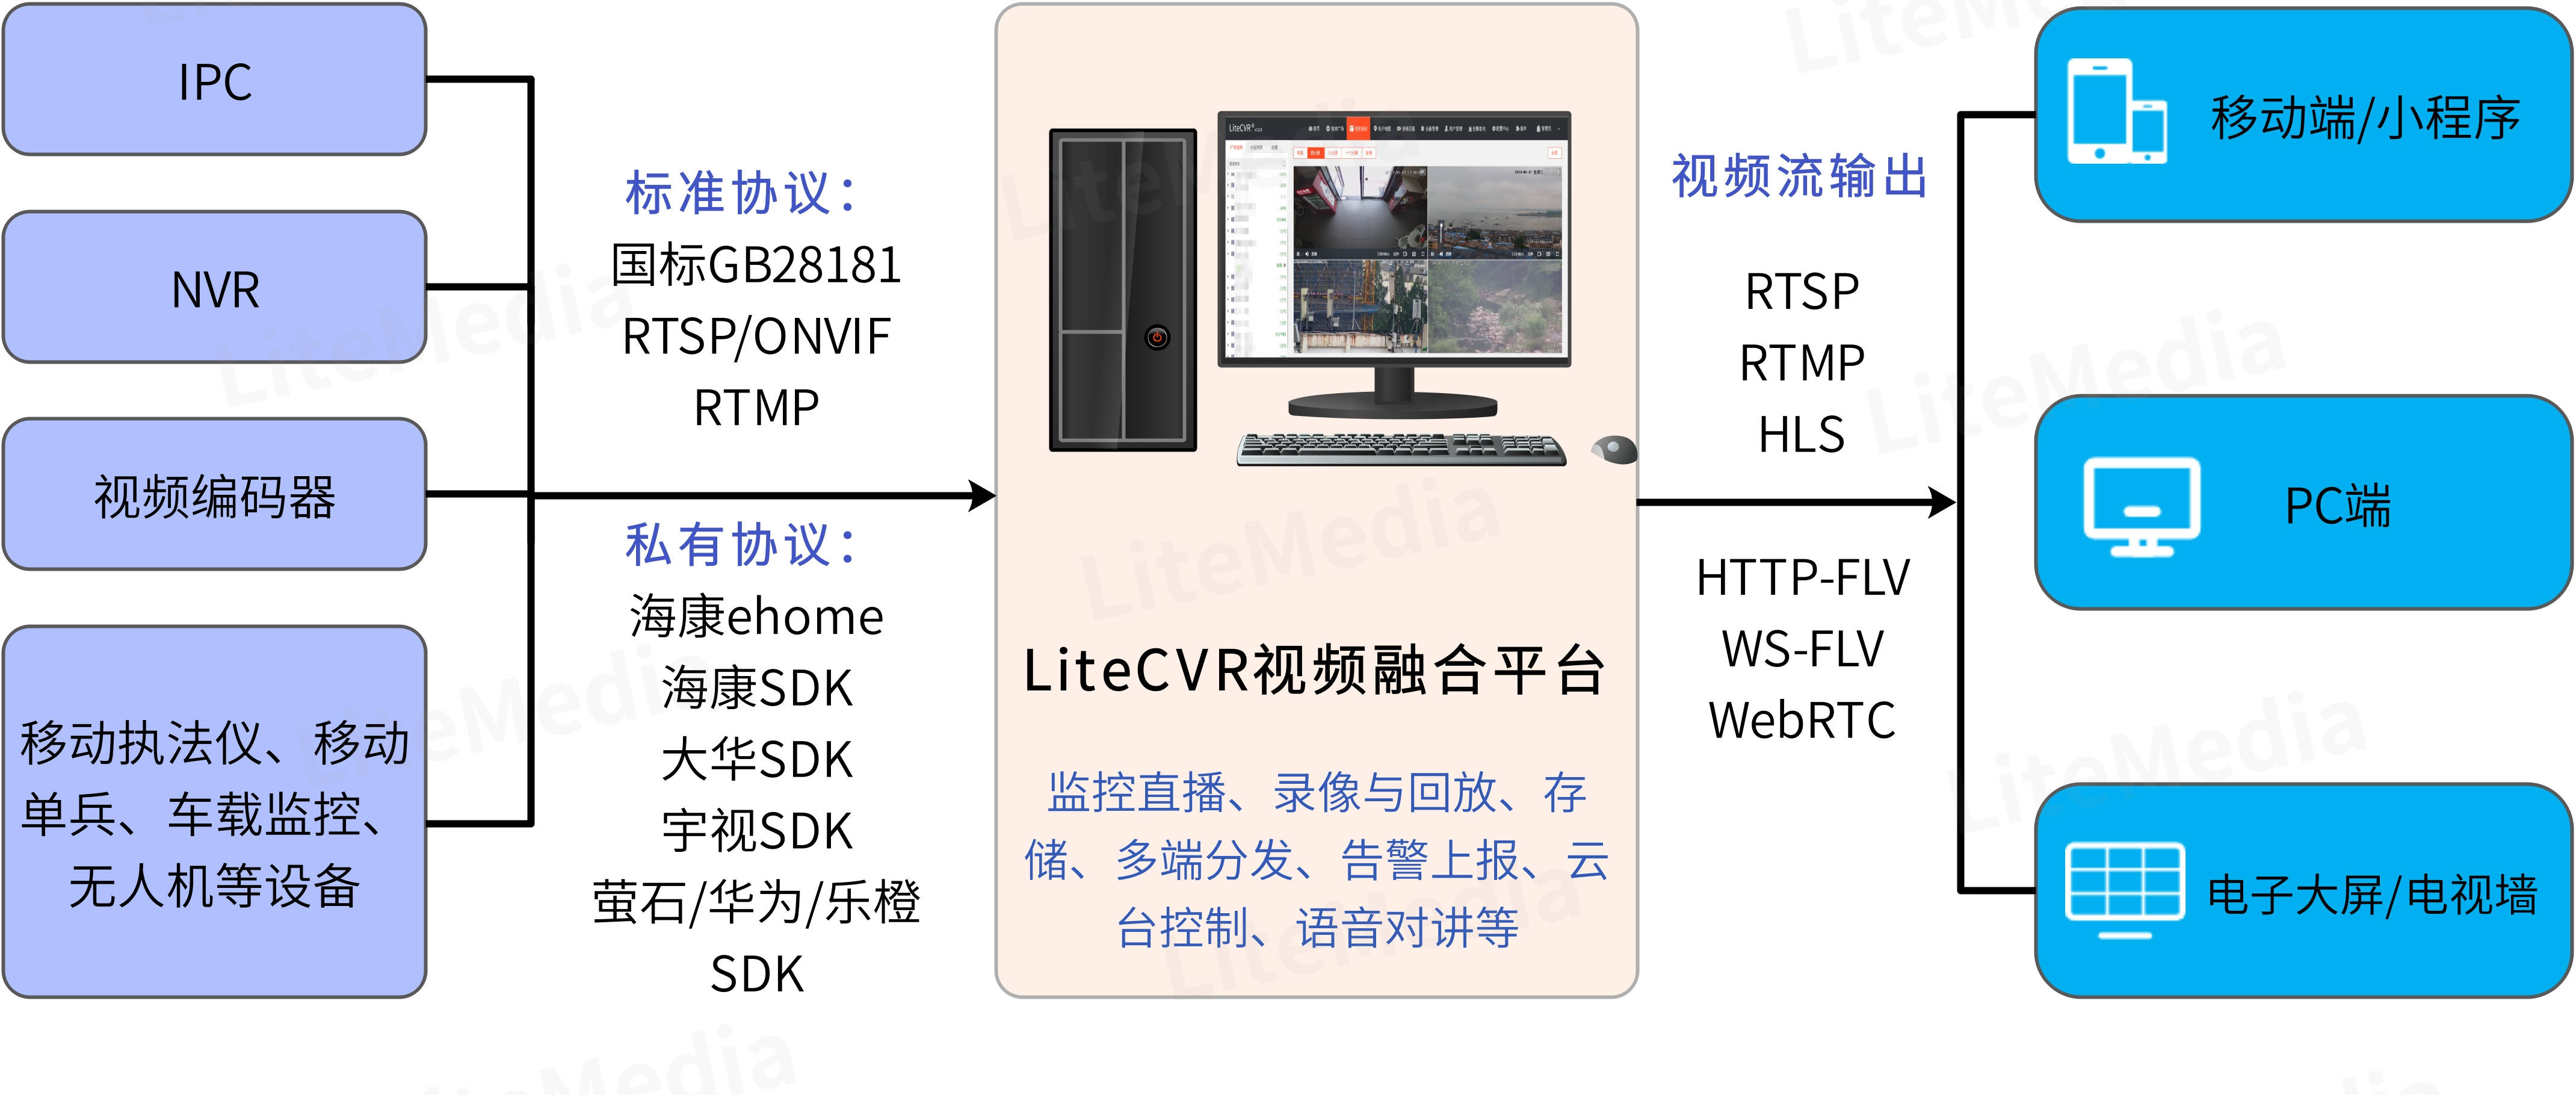 RTMP流媒体服务器LiteCVR平台实现CDN转推的操作步骤_监控